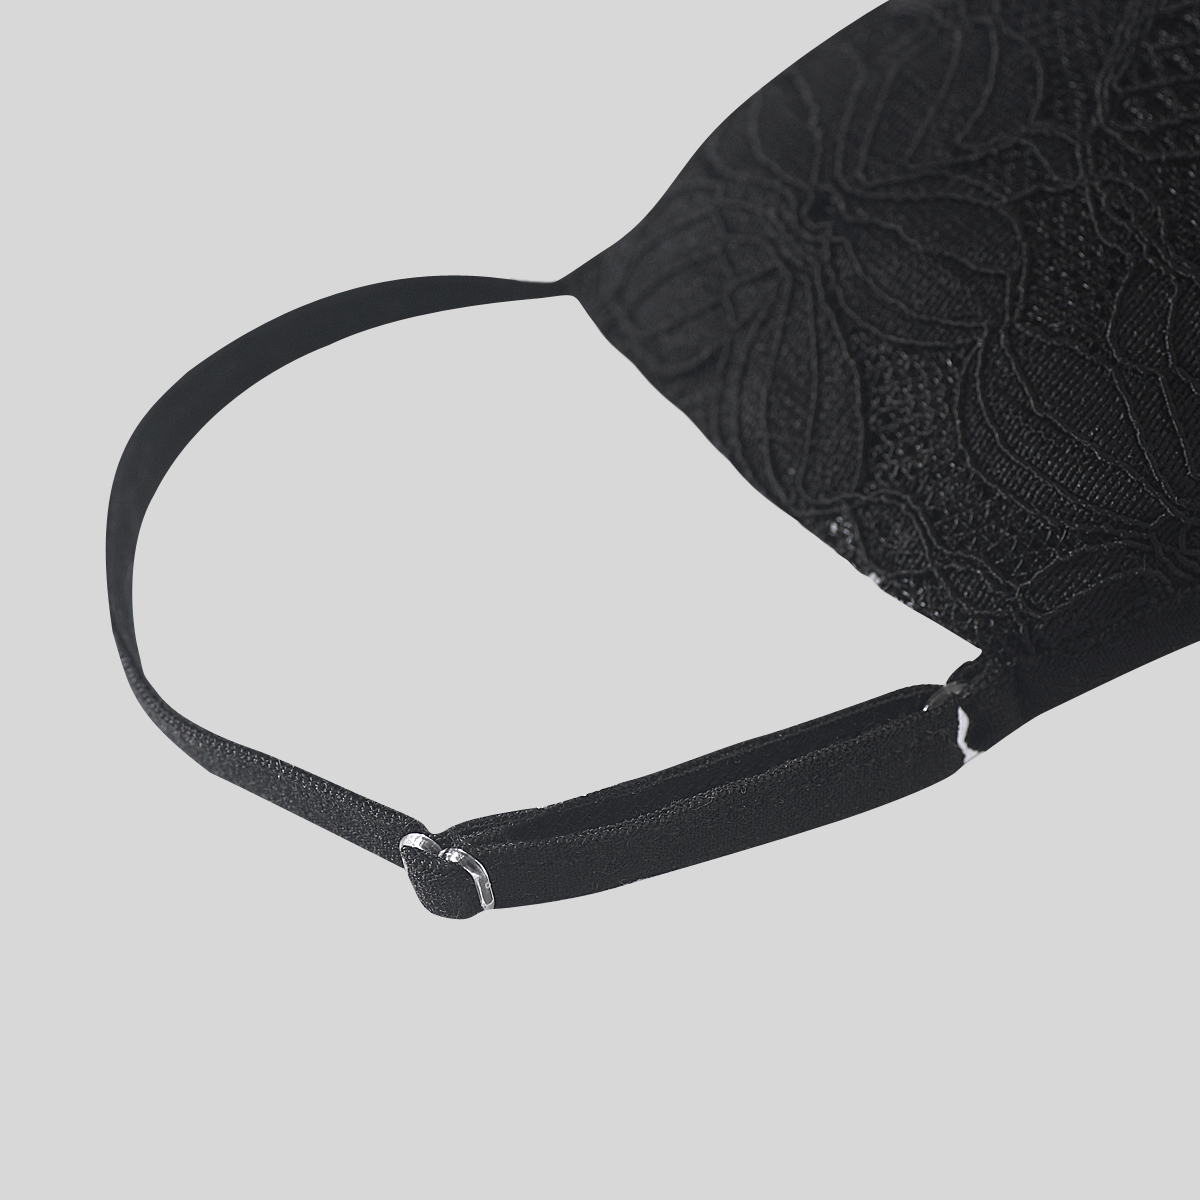 Neo Design Knit Weave Sidenblandning med Spets Tyg Ansiktsmask 4 lager Eleganta ansiktsbeläggningar Svart och vit ansiktsmask